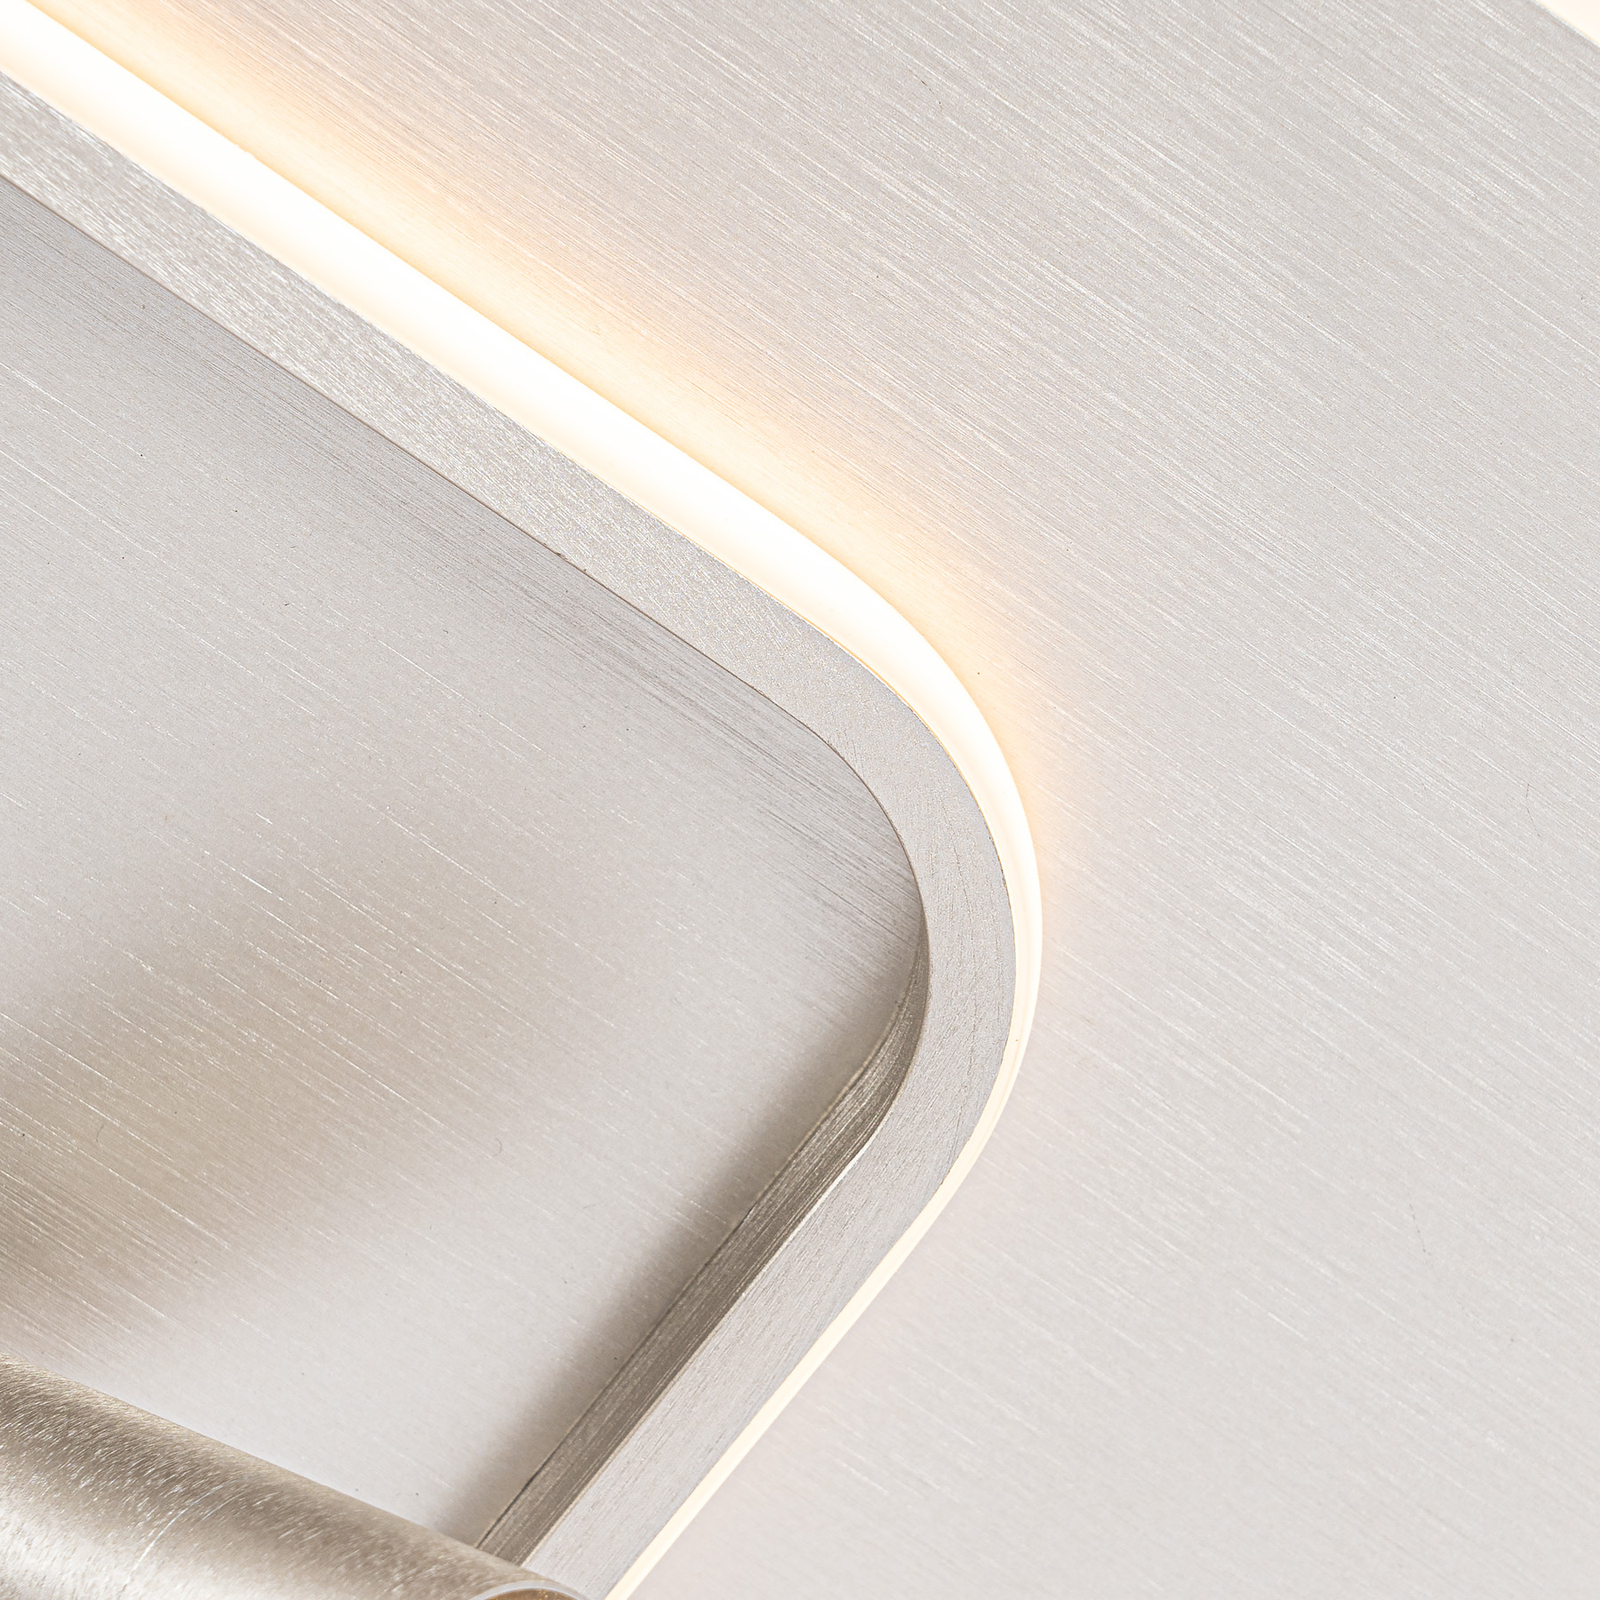 Lucande Tival LED-Deckenlampe, eckig, 43cm, nickel